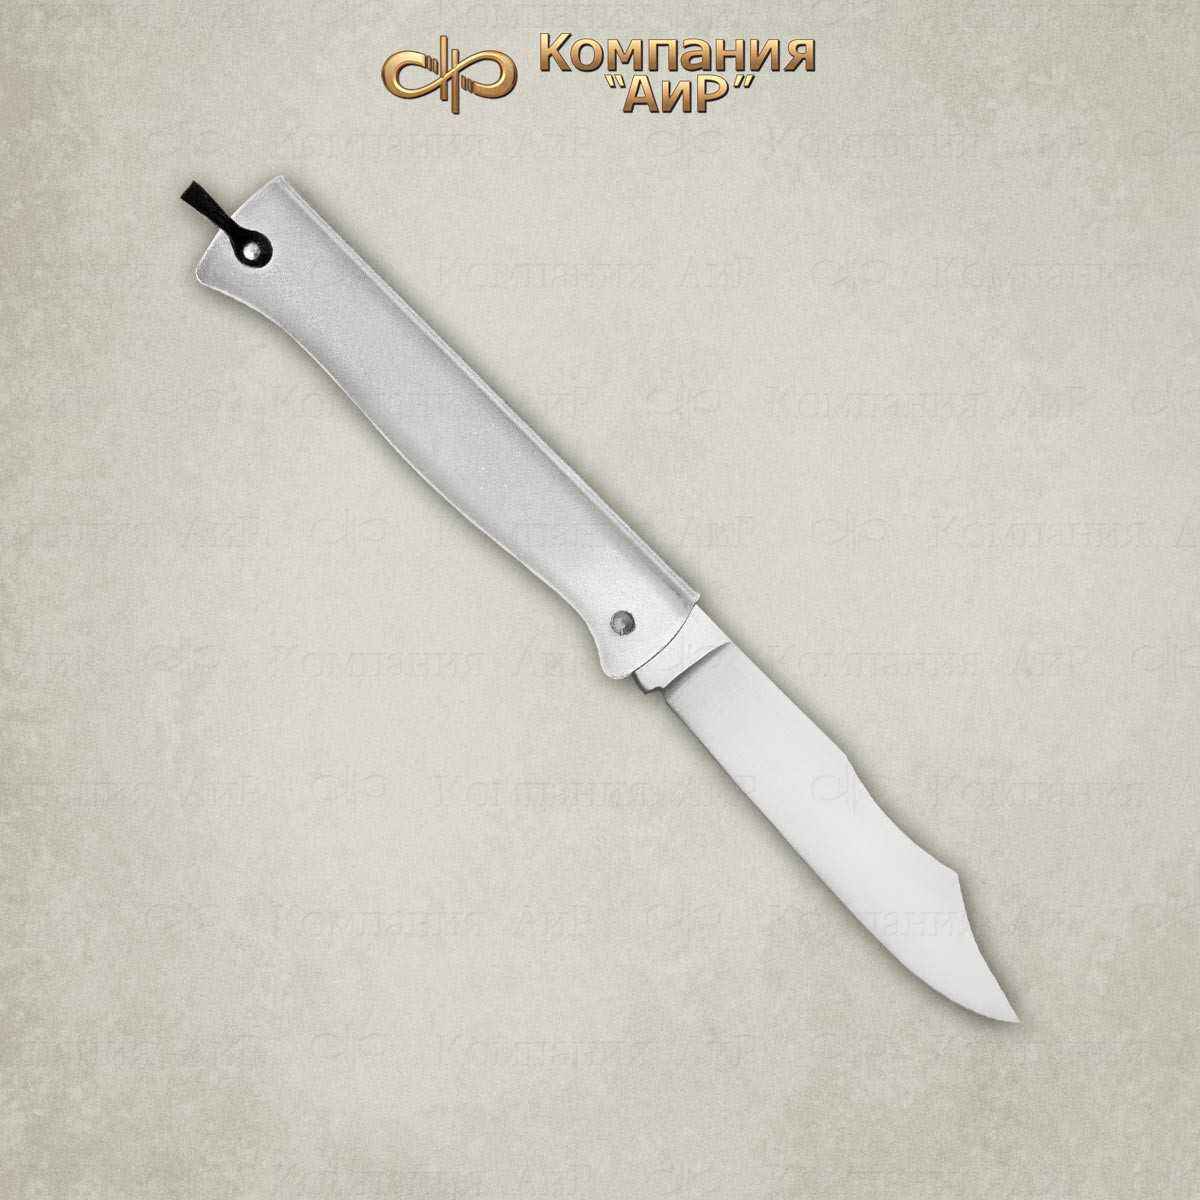 Нож складной Дук-дук (DOUK-DOUK) большой хром, нерж. сталь, Франция - Компания «АиР»